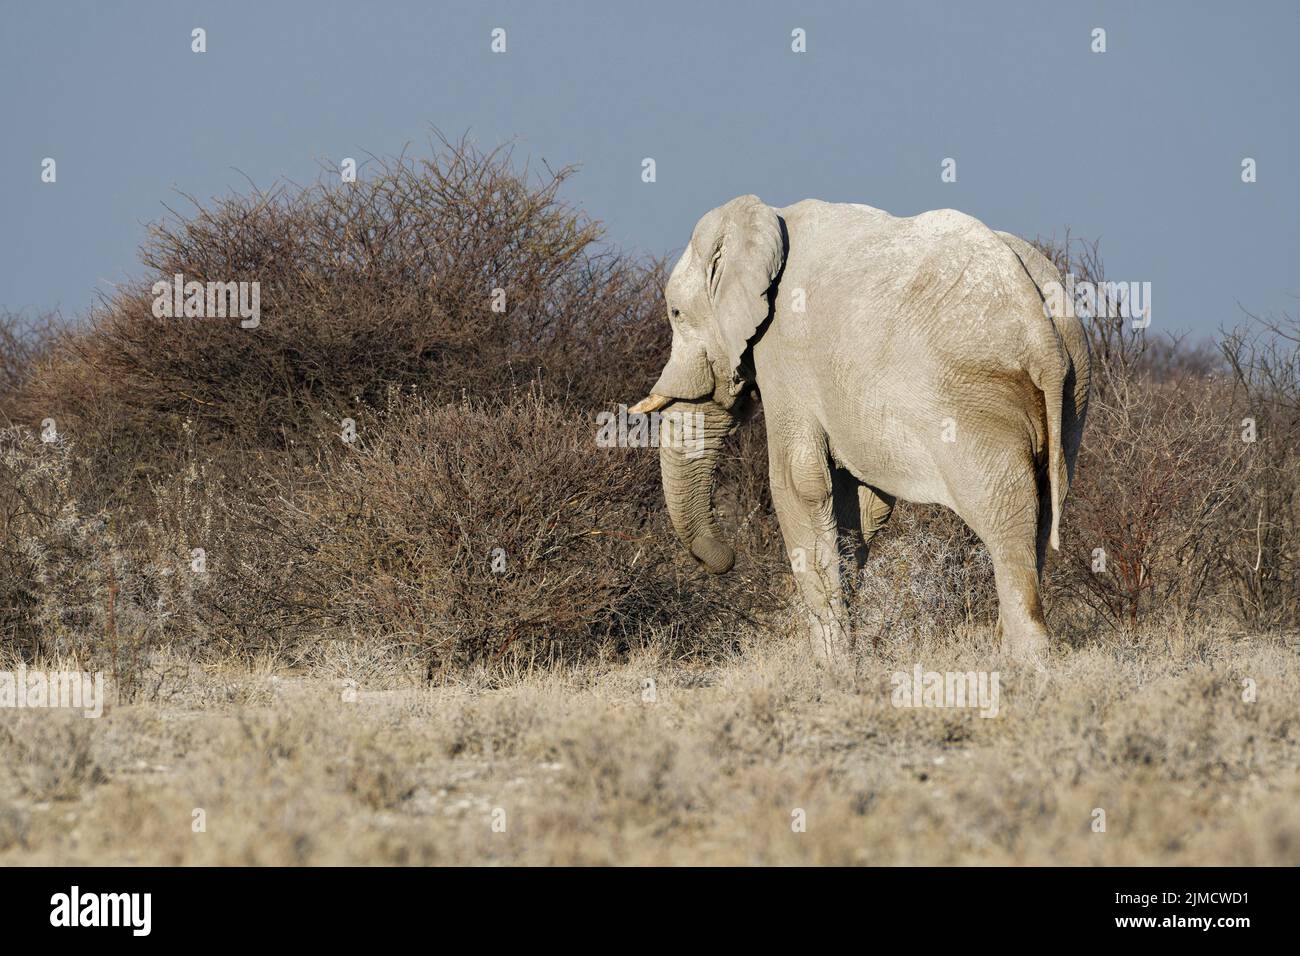 Elefante africano de monte (Loxodonta africana), macho adulto que se alimenta de una ramita, sabana, Parque Nacional Etosha, Namibia, África Foto de stock